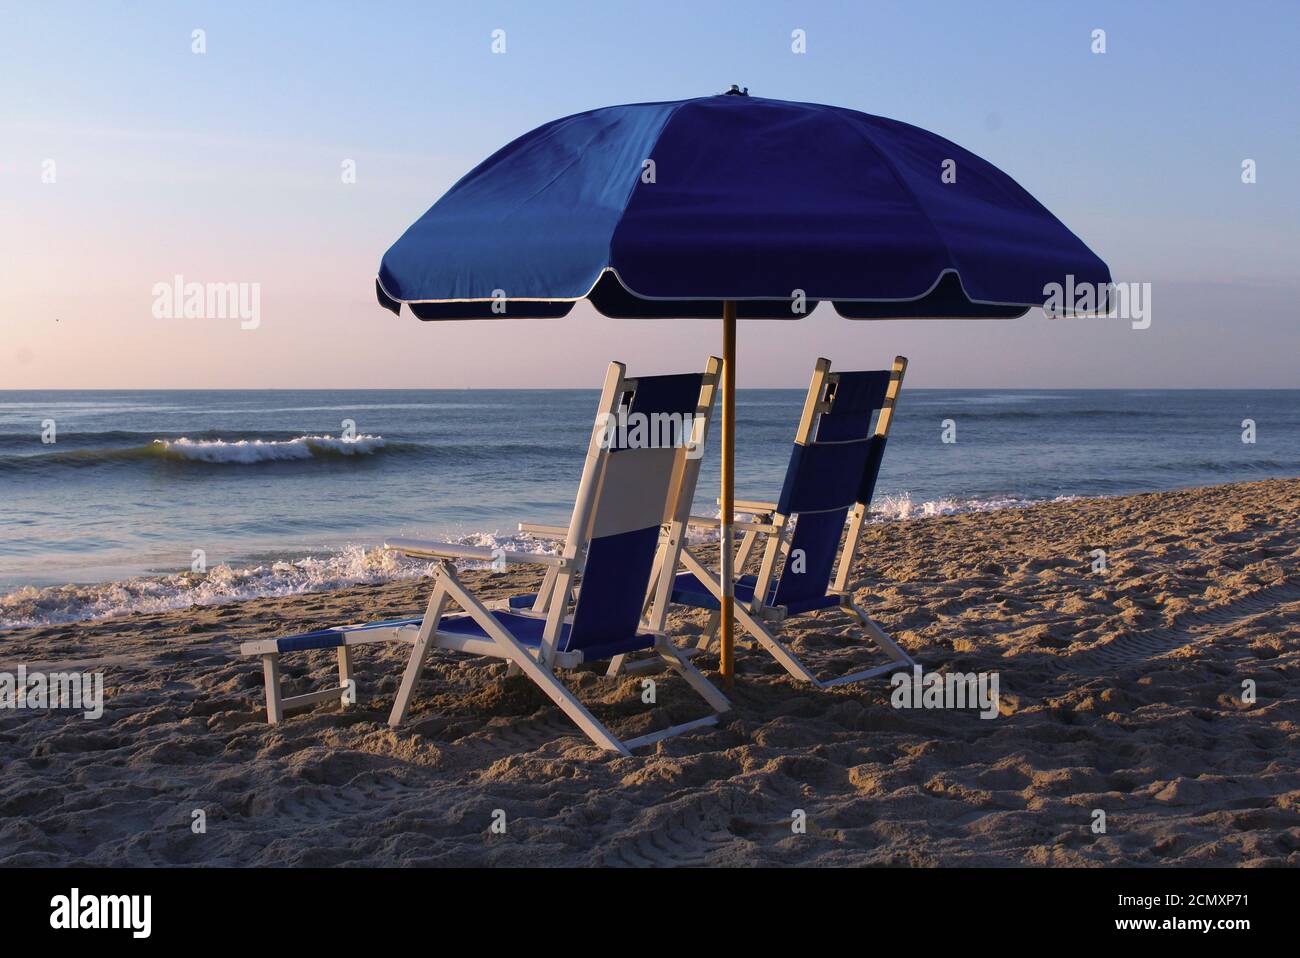 Tumbonas bajo una sombrilla en la playa al amanecer. Foto de stock